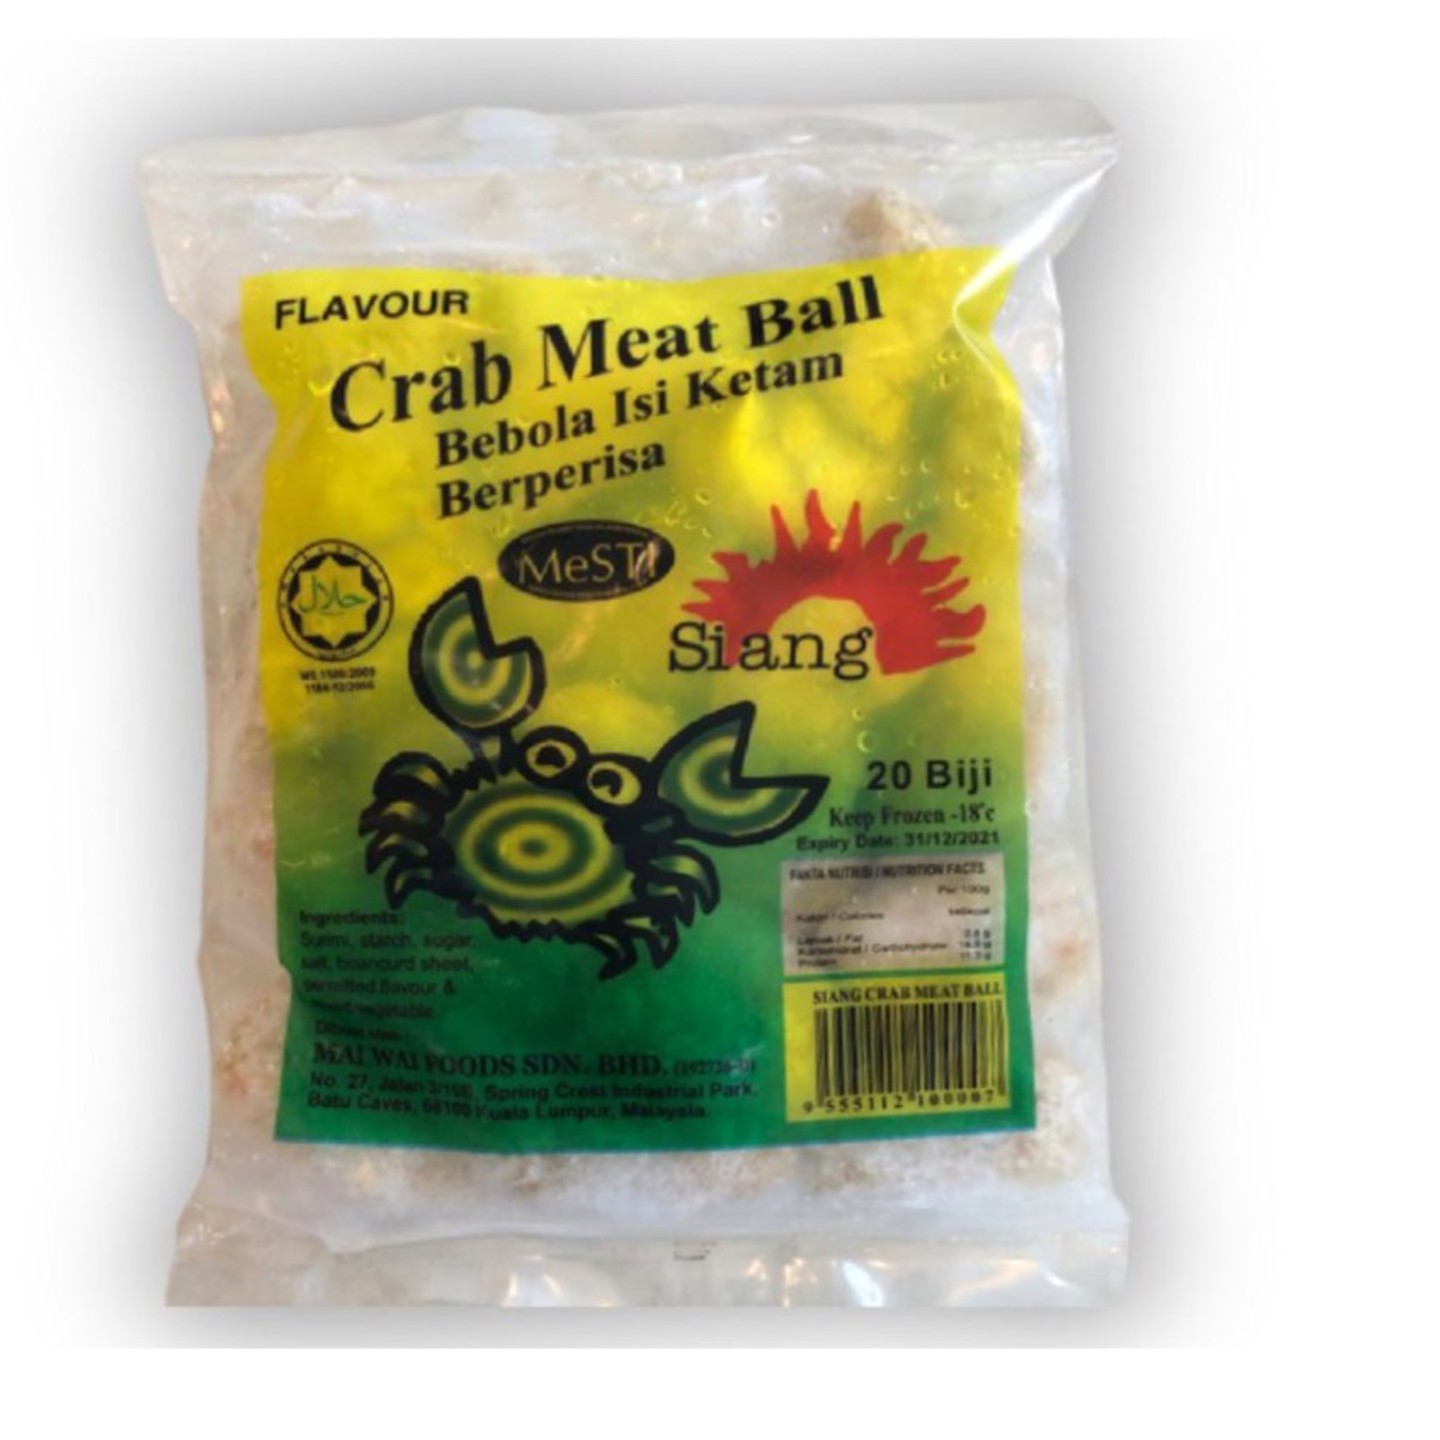 Siang - Crab Meat Ball  Bebola Isi Ketam